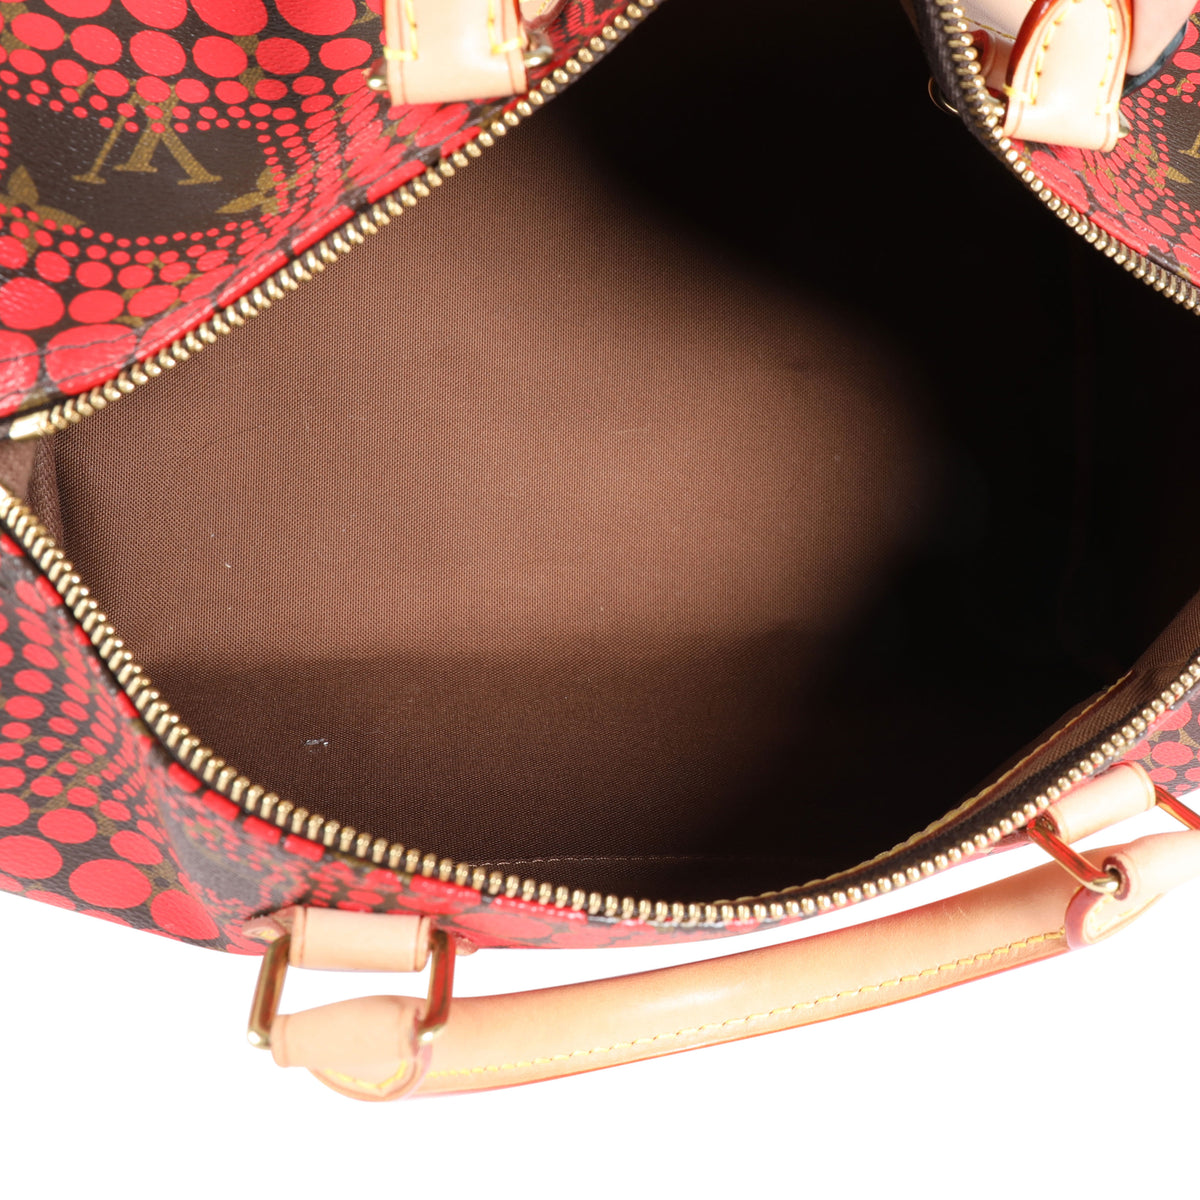 Yayoi Kusama x Louis Vuitton Red EPI Leather Infinity Dots Alma Bb